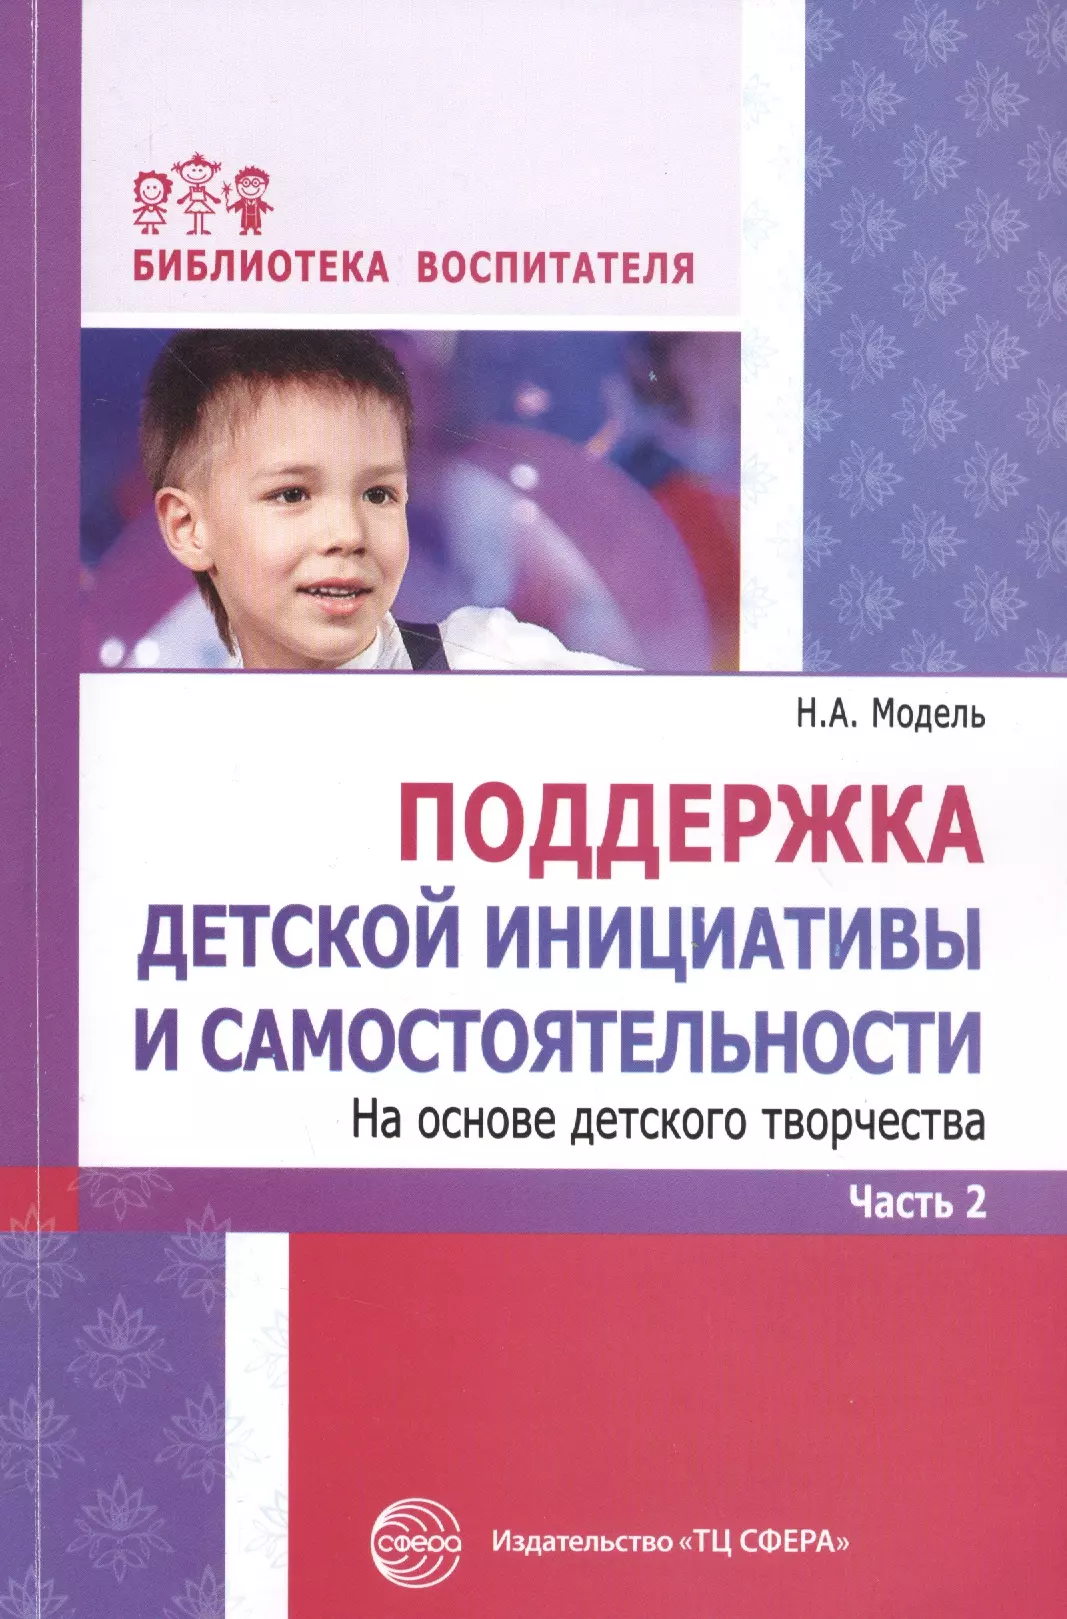 Модель Наталья Александровна - Поддержка детской инициативы и самостоятельности. Часть 2